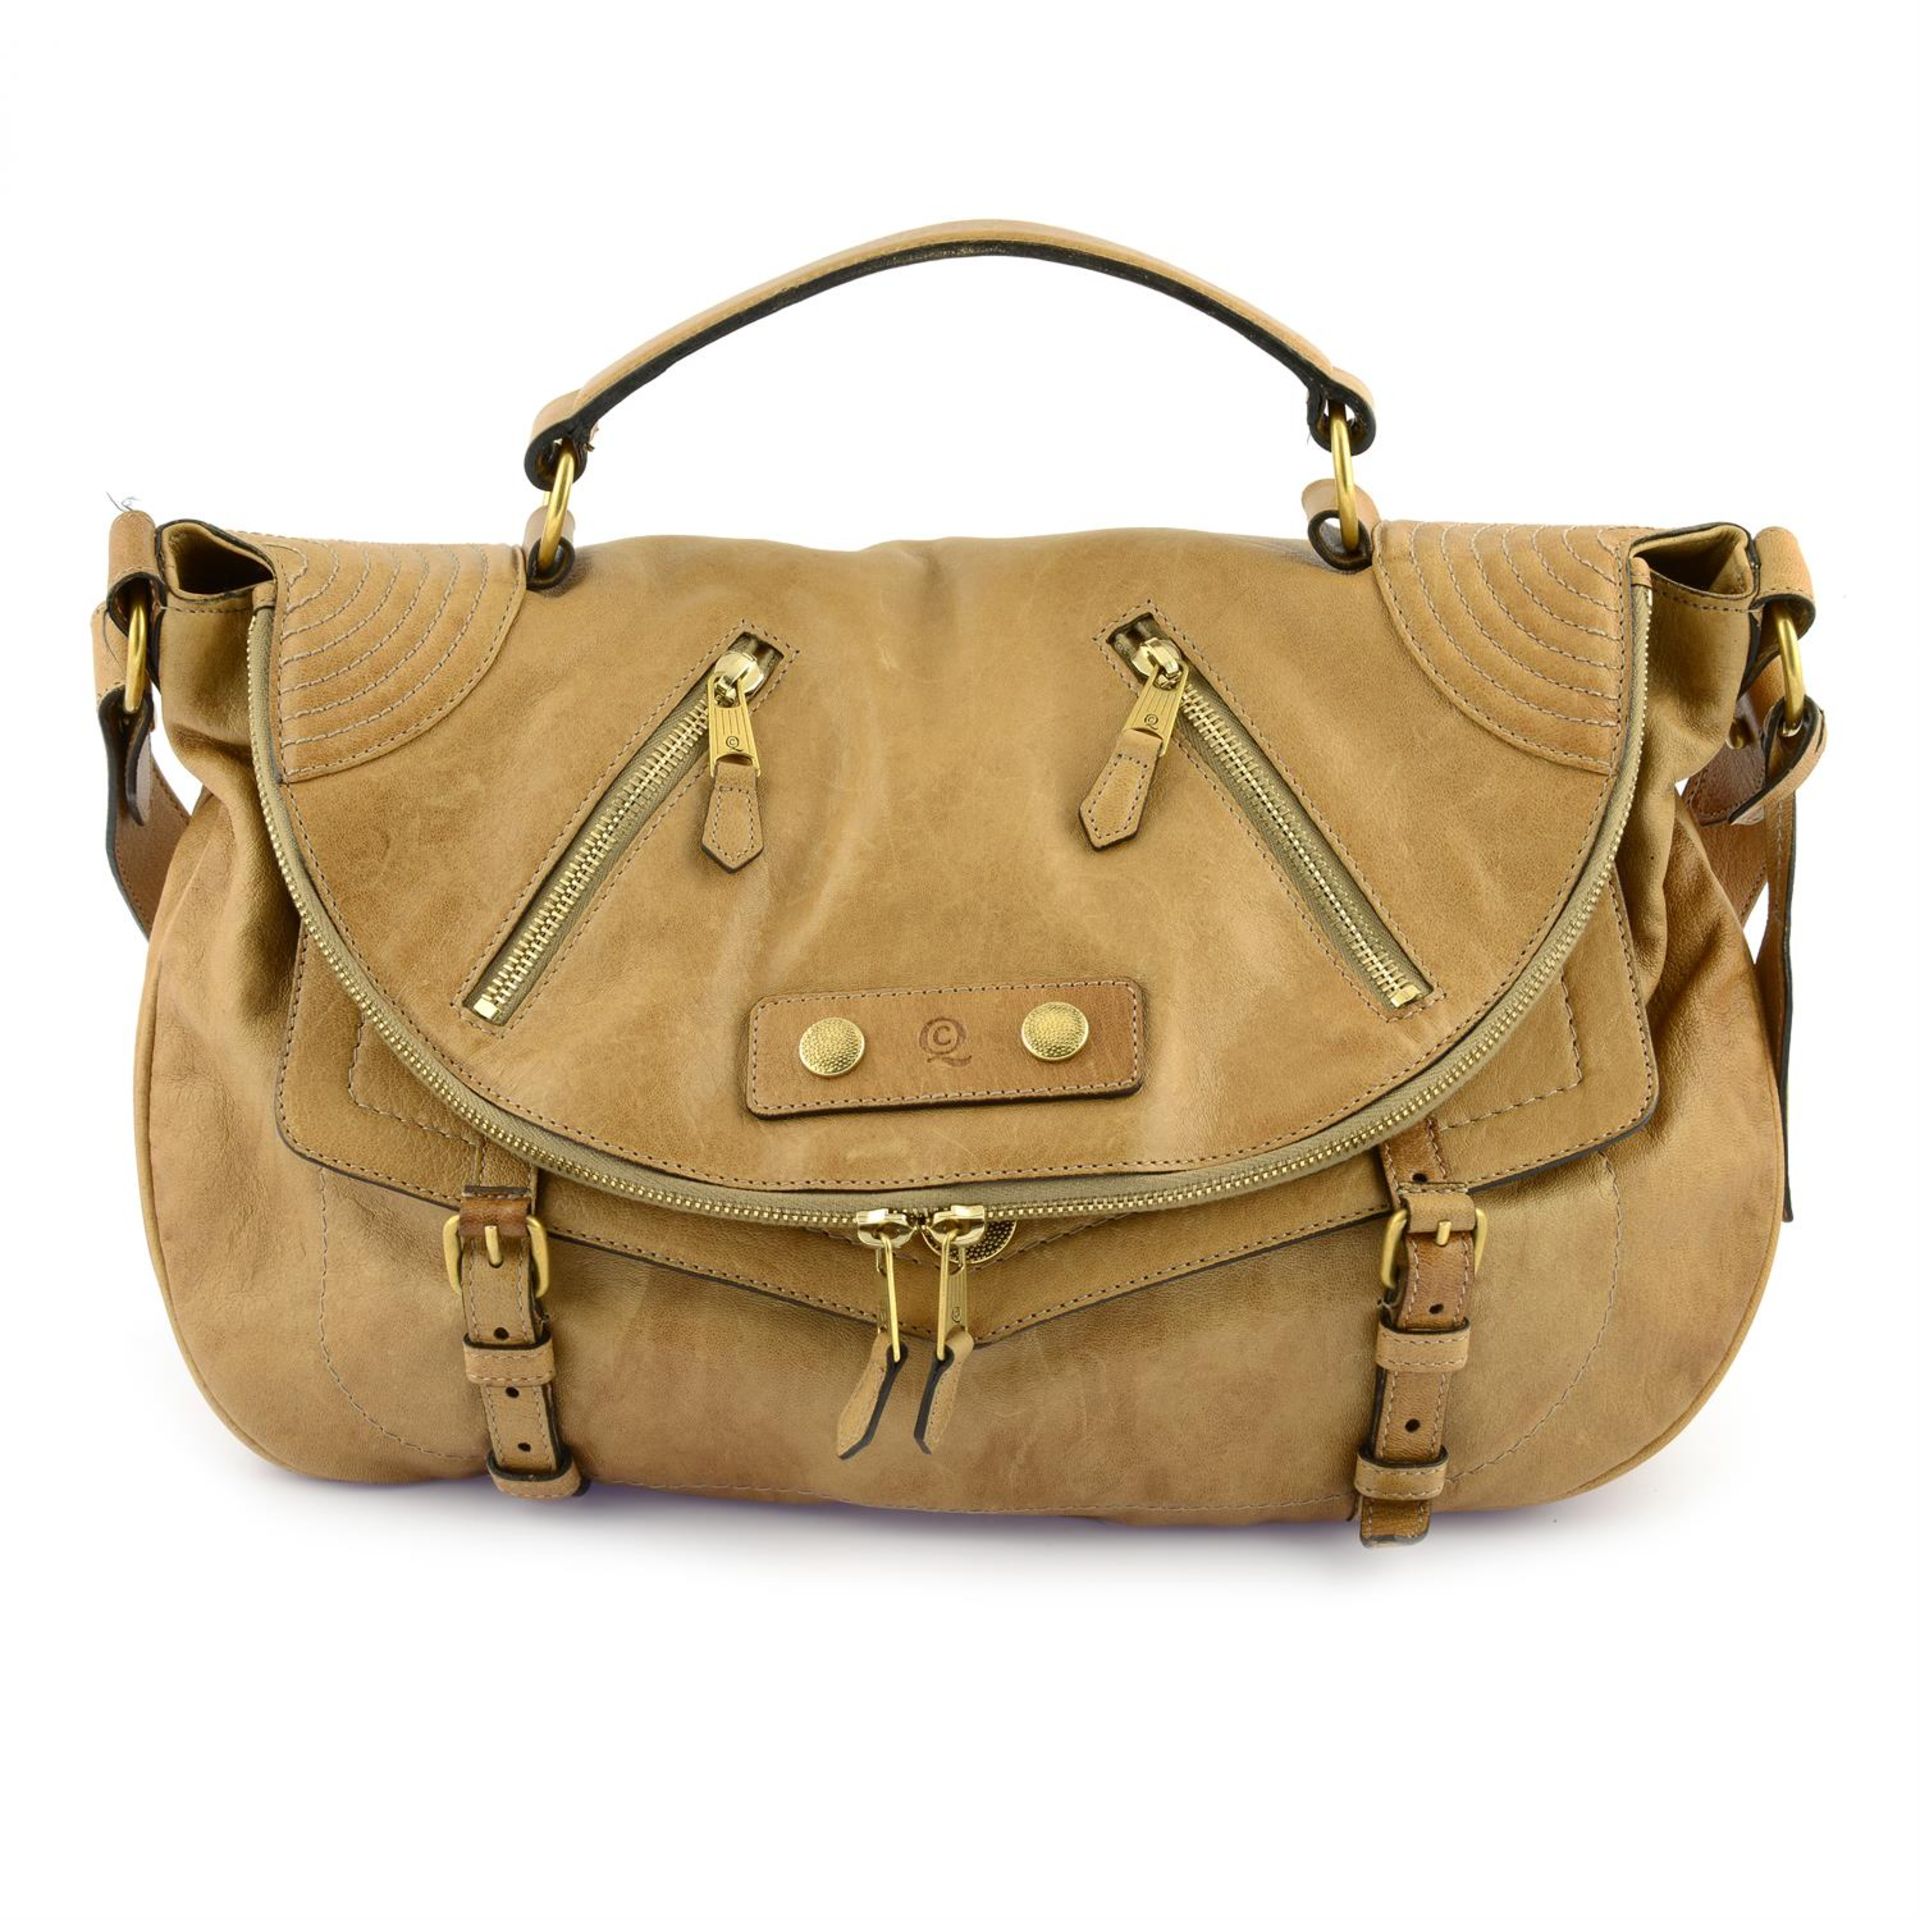 ALEXANDER MCQUEEN - a tan leather Faithfull handbag.